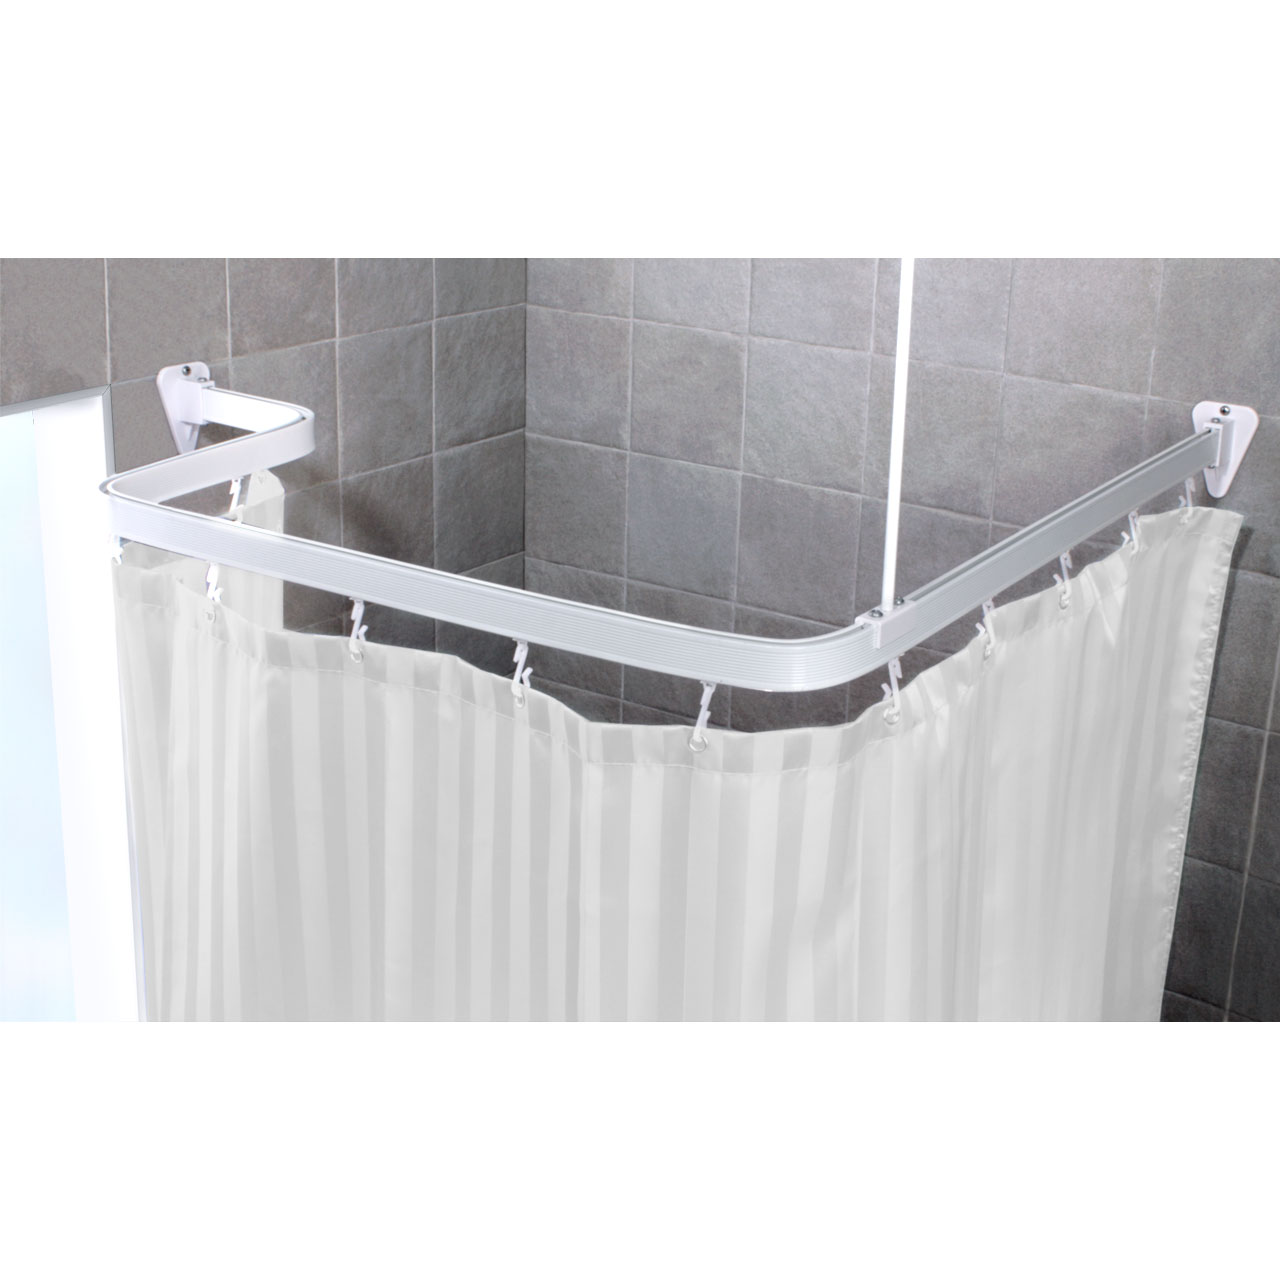 Riel de cortina flexible blanco, barras de cortina de ducha para montaje en  techo o pared, riel divisor de habitación de aluminio para baño, sala de